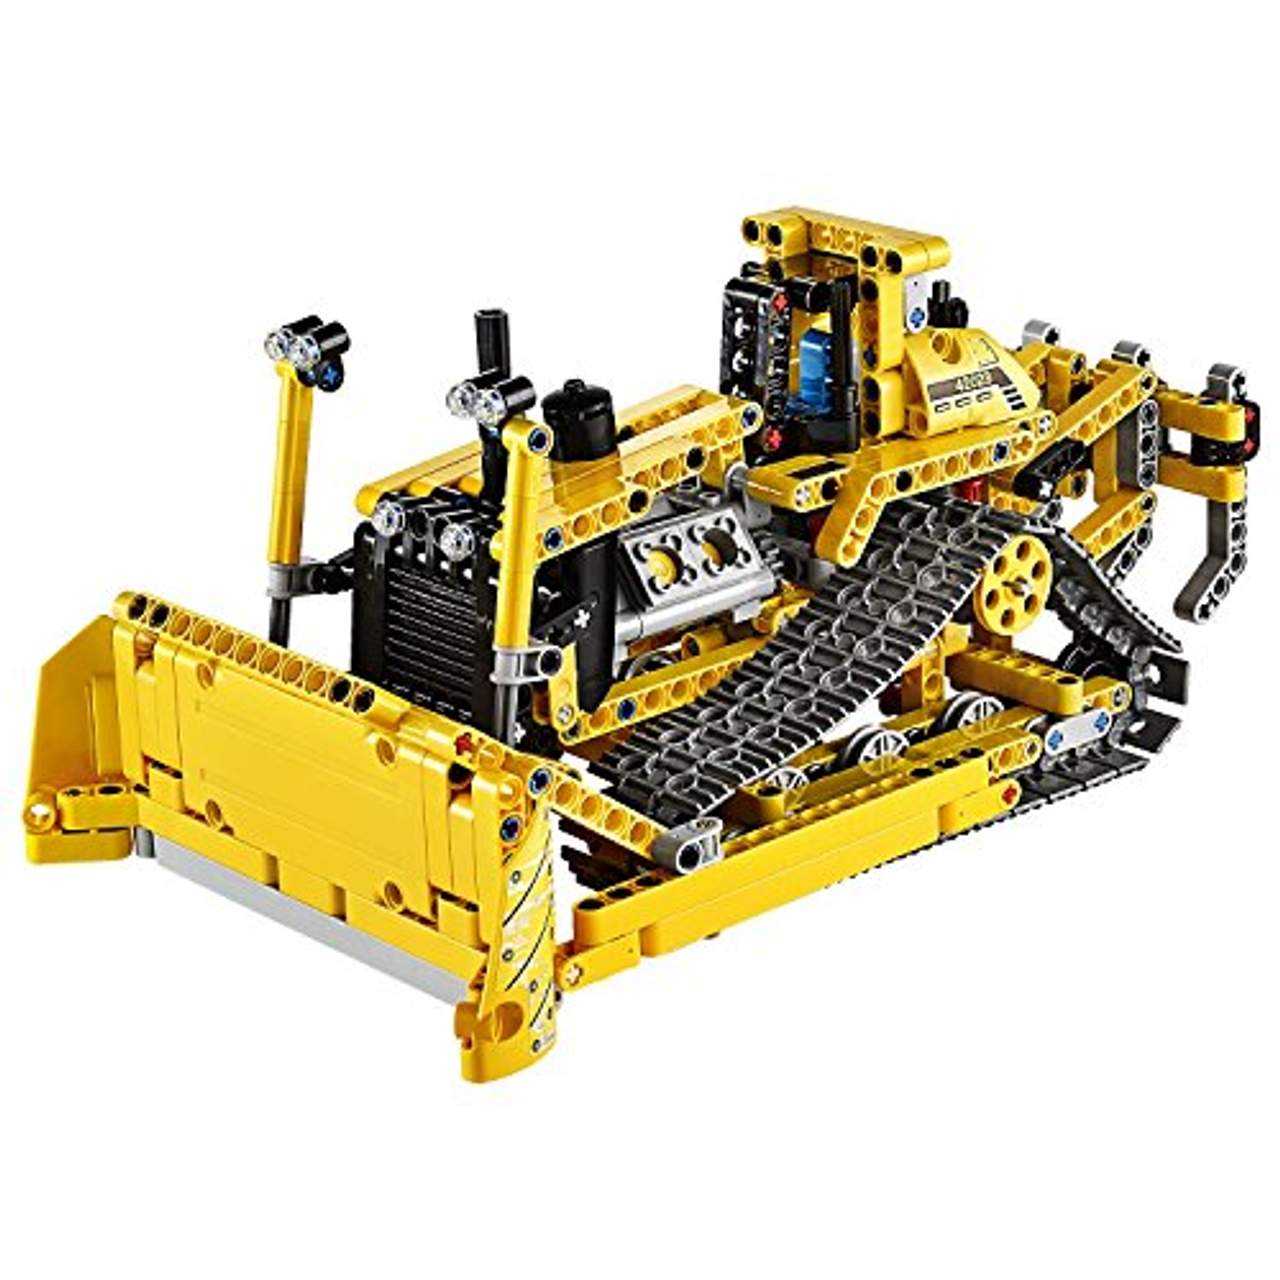 LEGO Technic 42028 Bulldozer